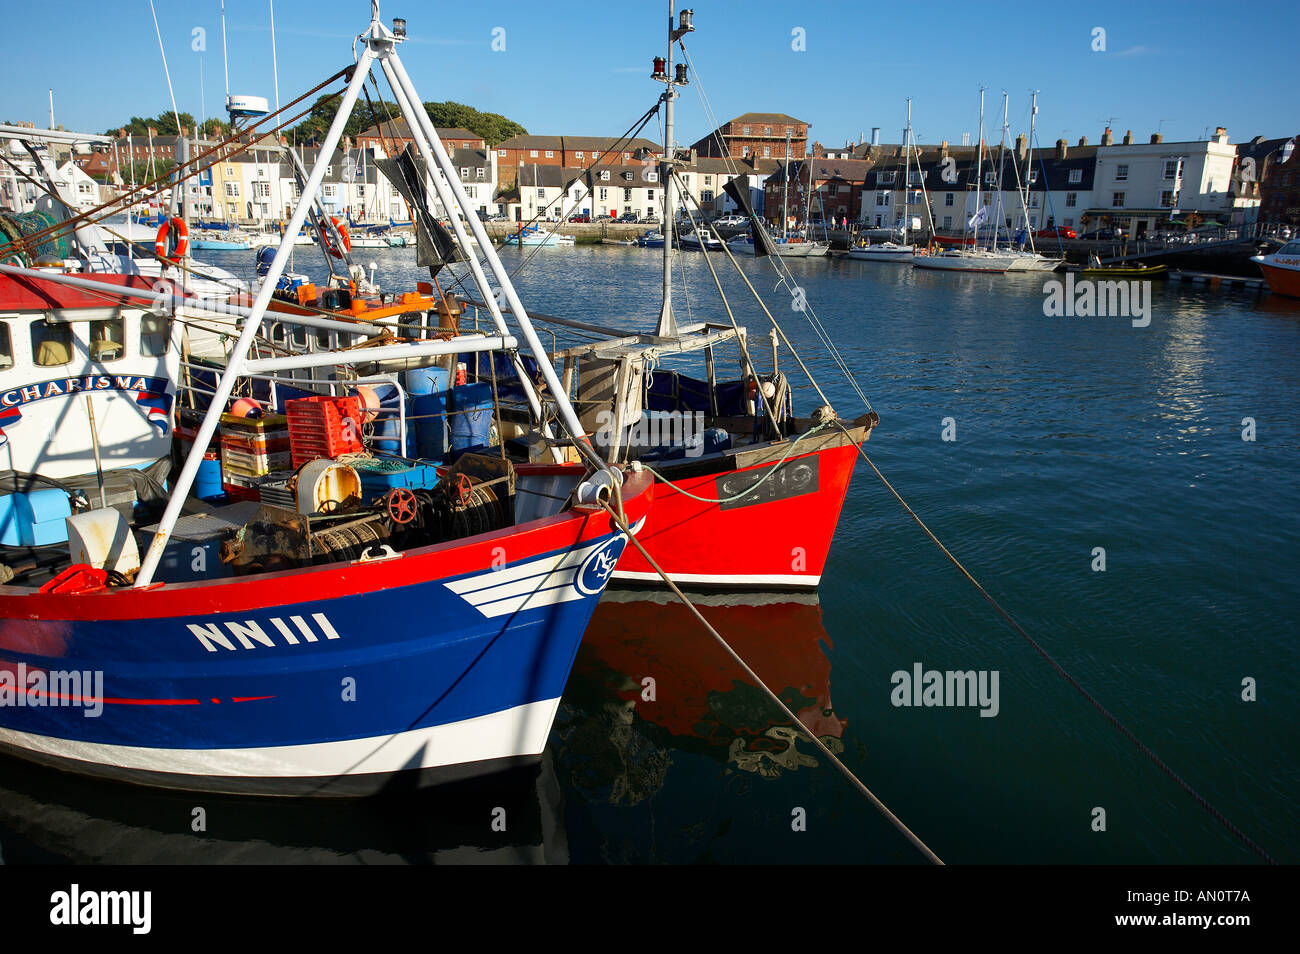 Bateaux de pêche dans le port de Weymouth Dorset England UK Banque D'Images